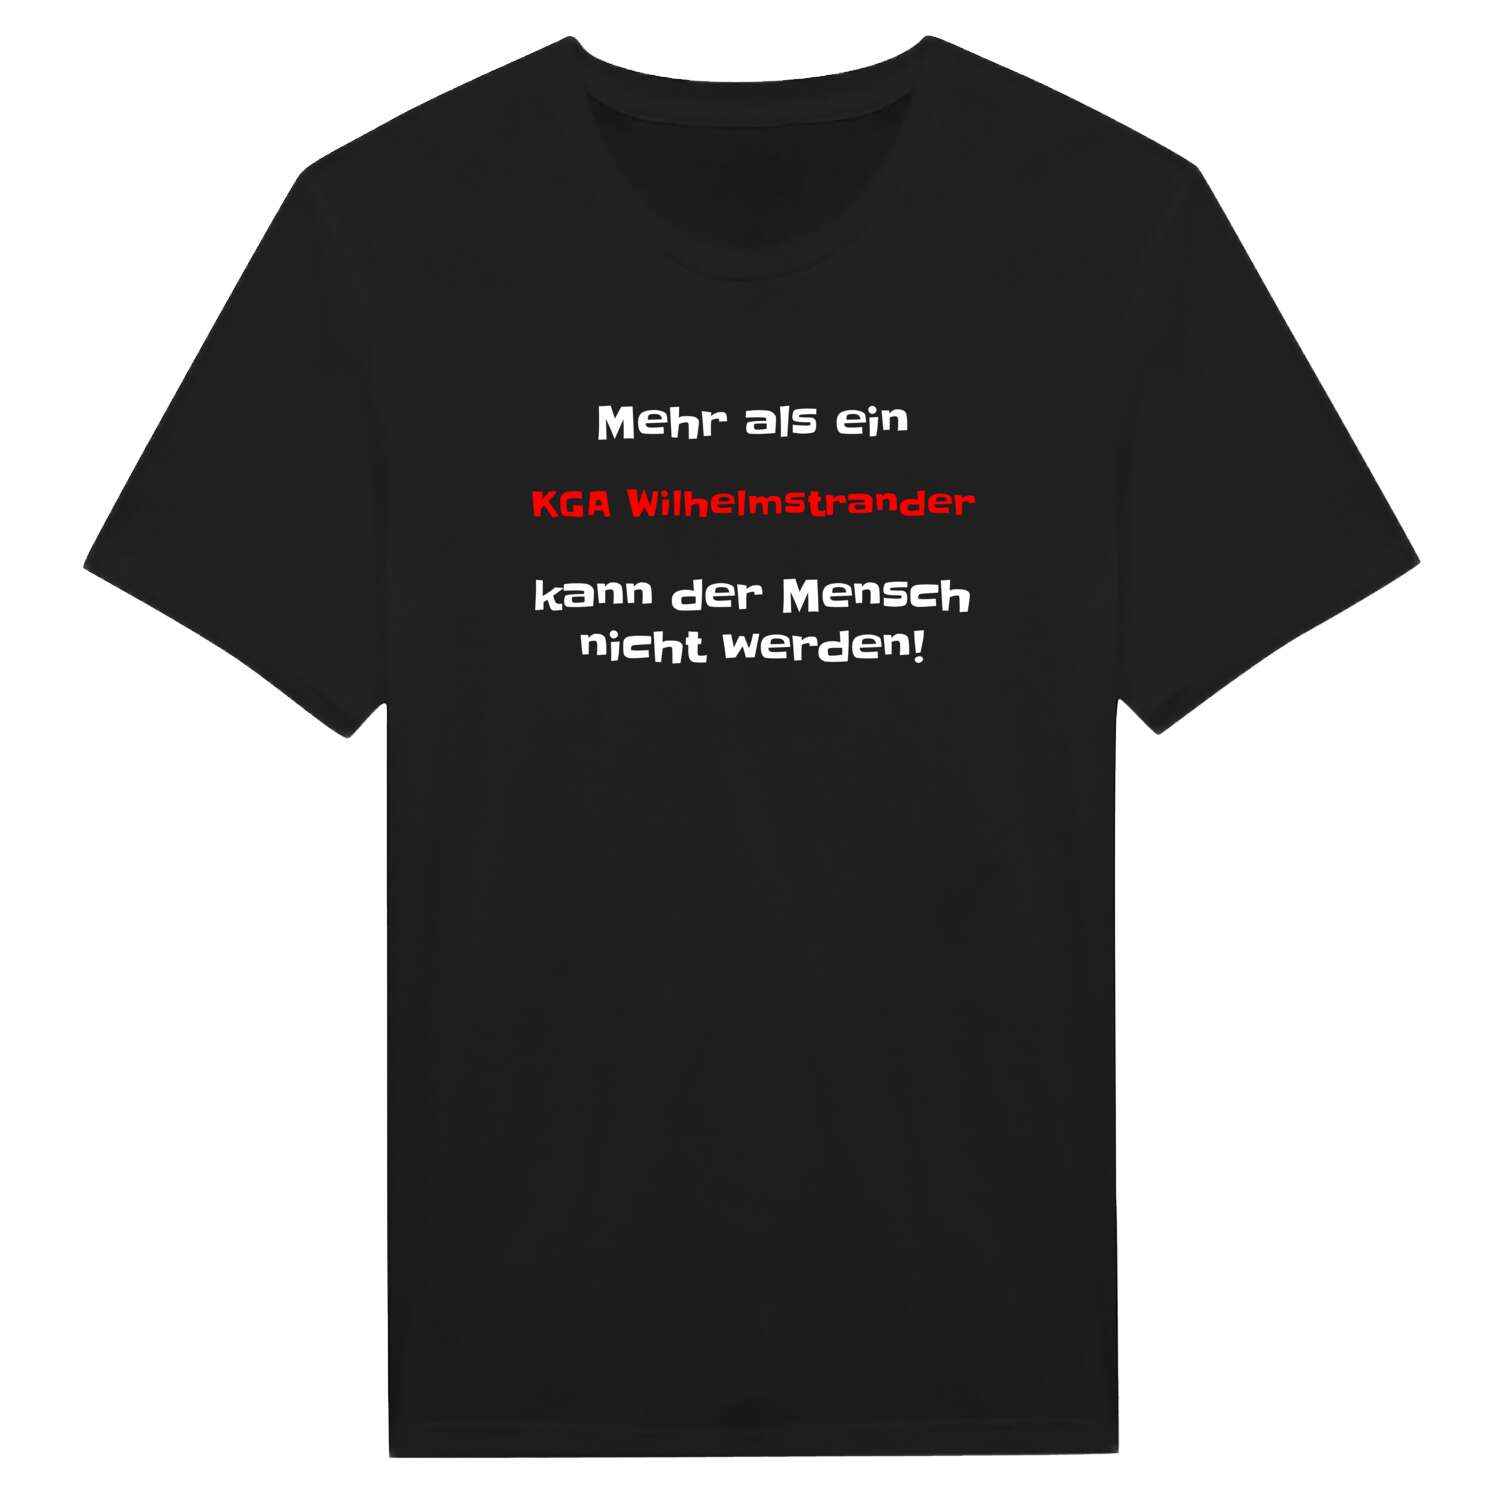 KGA Wilhelmstrand T-Shirt »Mehr als ein«